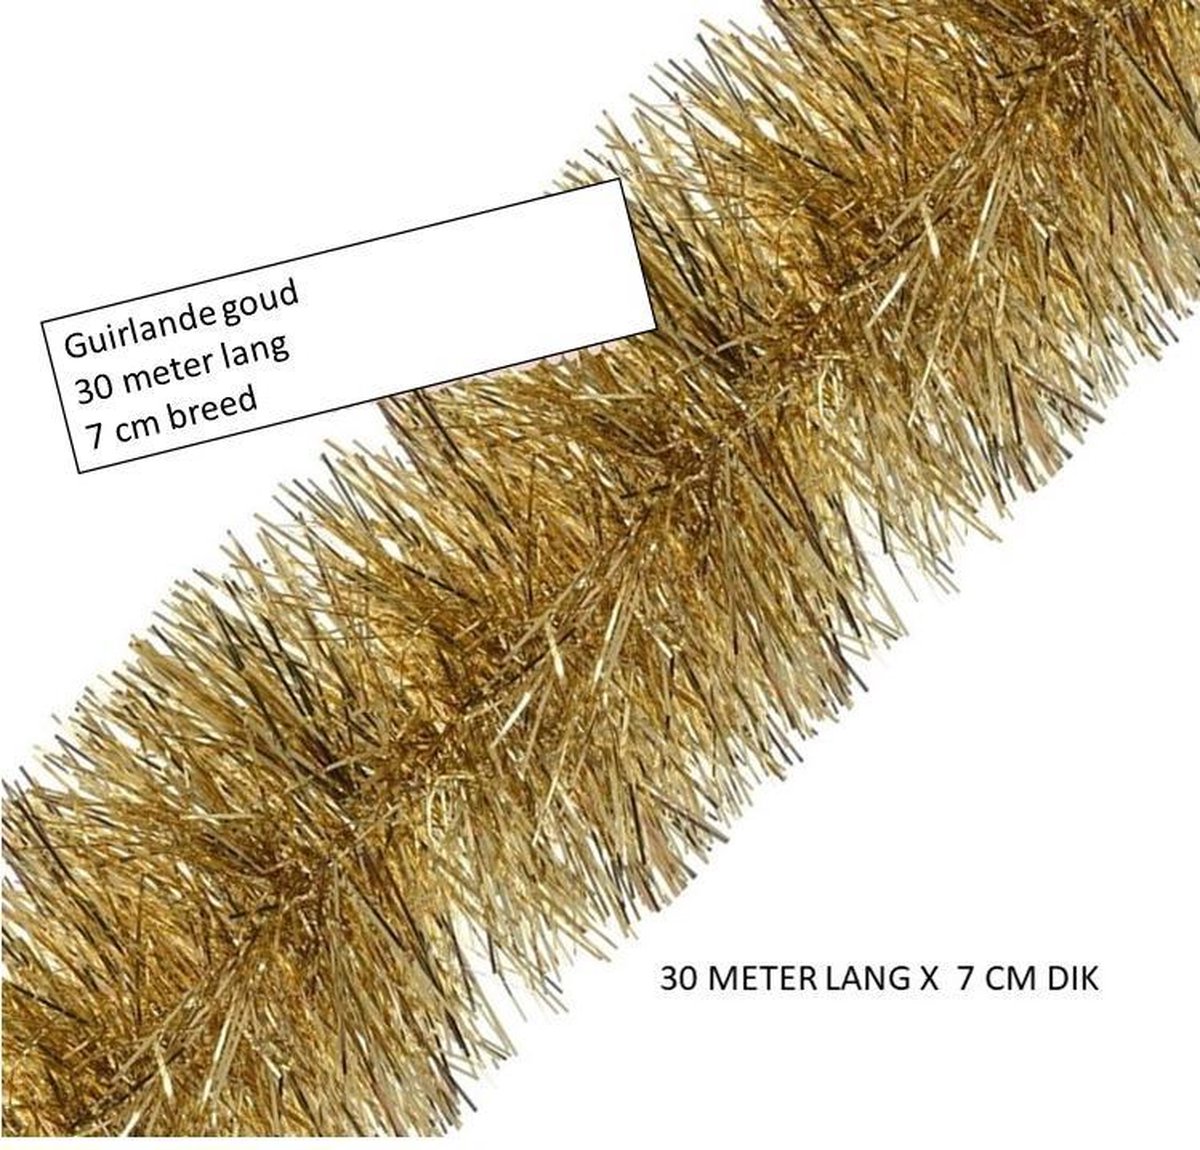 Guirlande kerstslinger metallic GOUD – 30 meter lang en 7 cm dik guirlande – kerstmis.